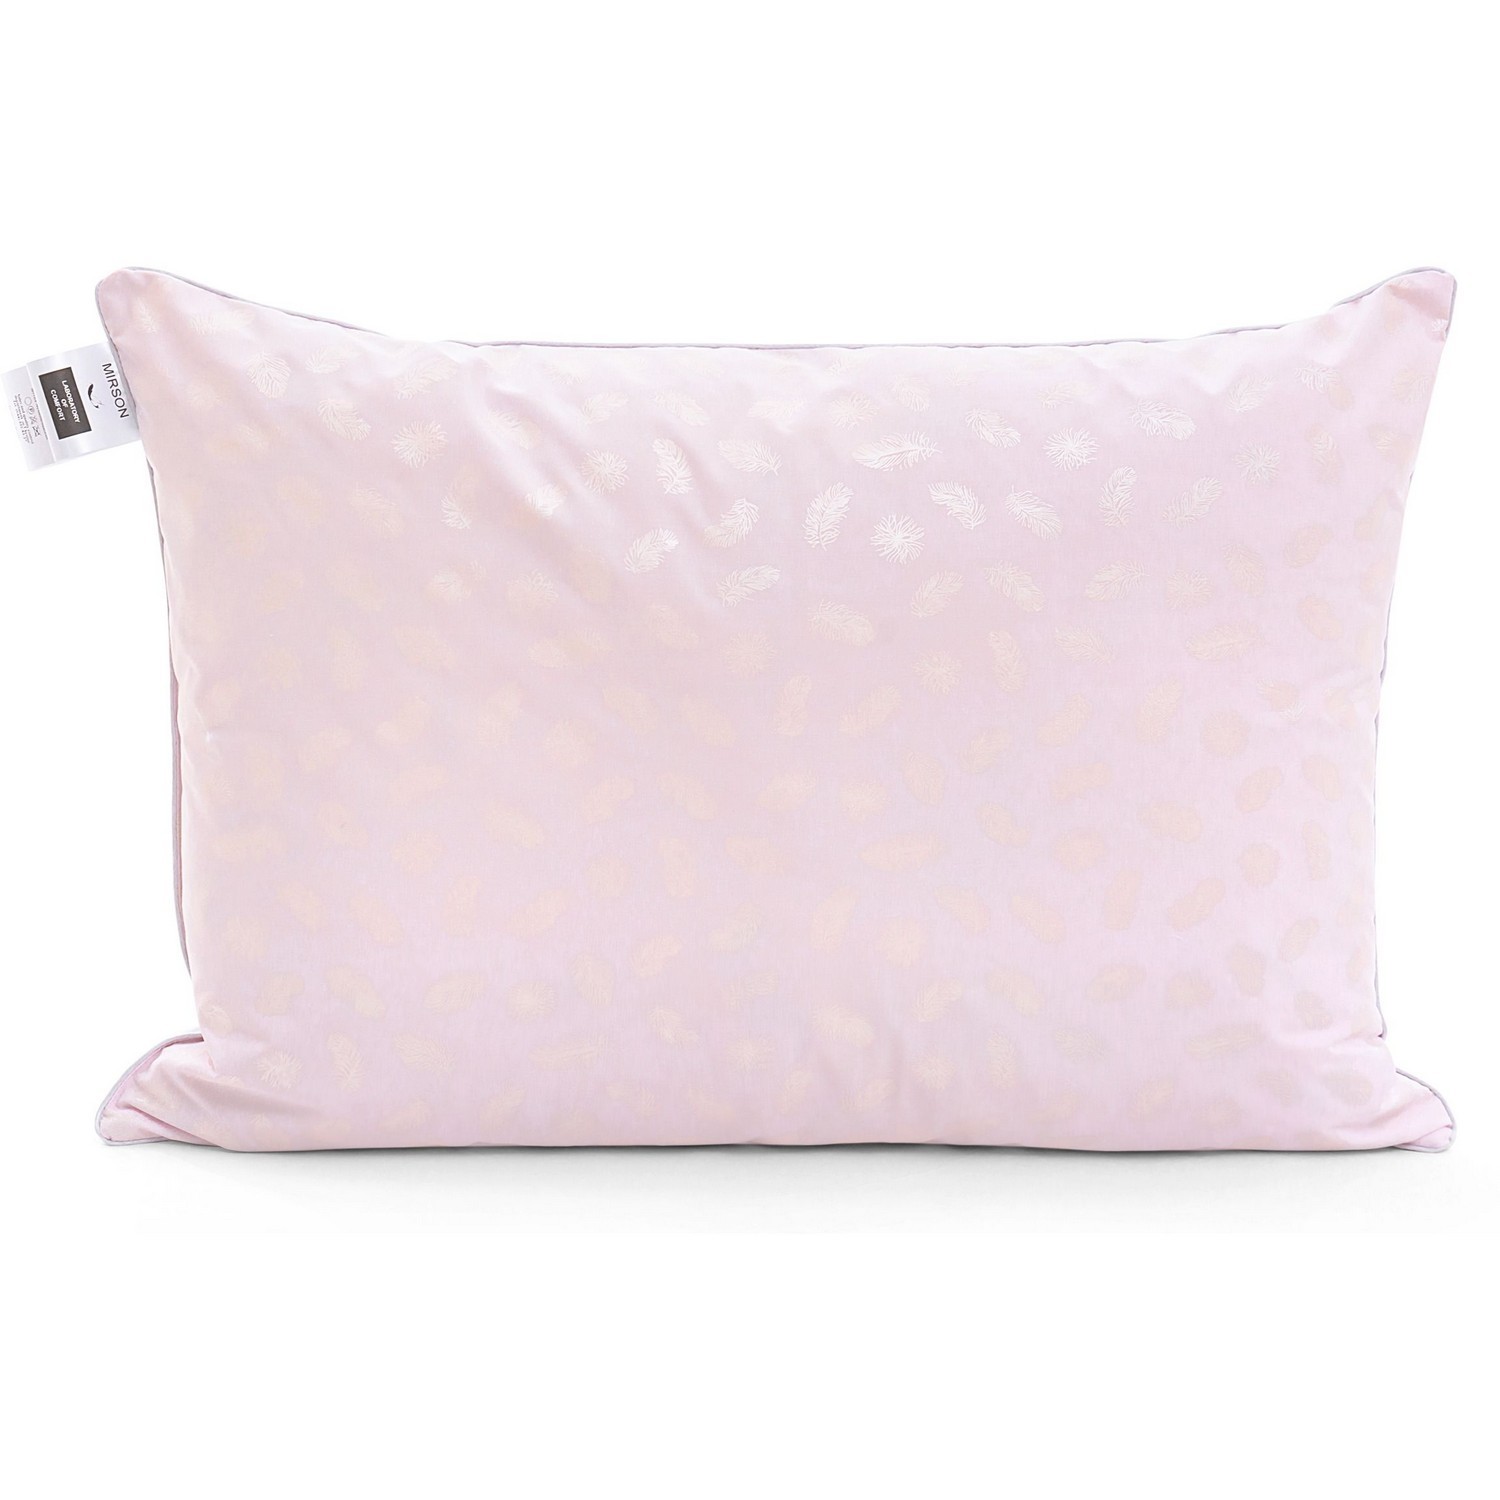 Подушка пуховая MirSon Karmen №1825 Bio-Pink средняя, пух 50%, 60х60 см, бело-розовая (2200003012699) - фото 1